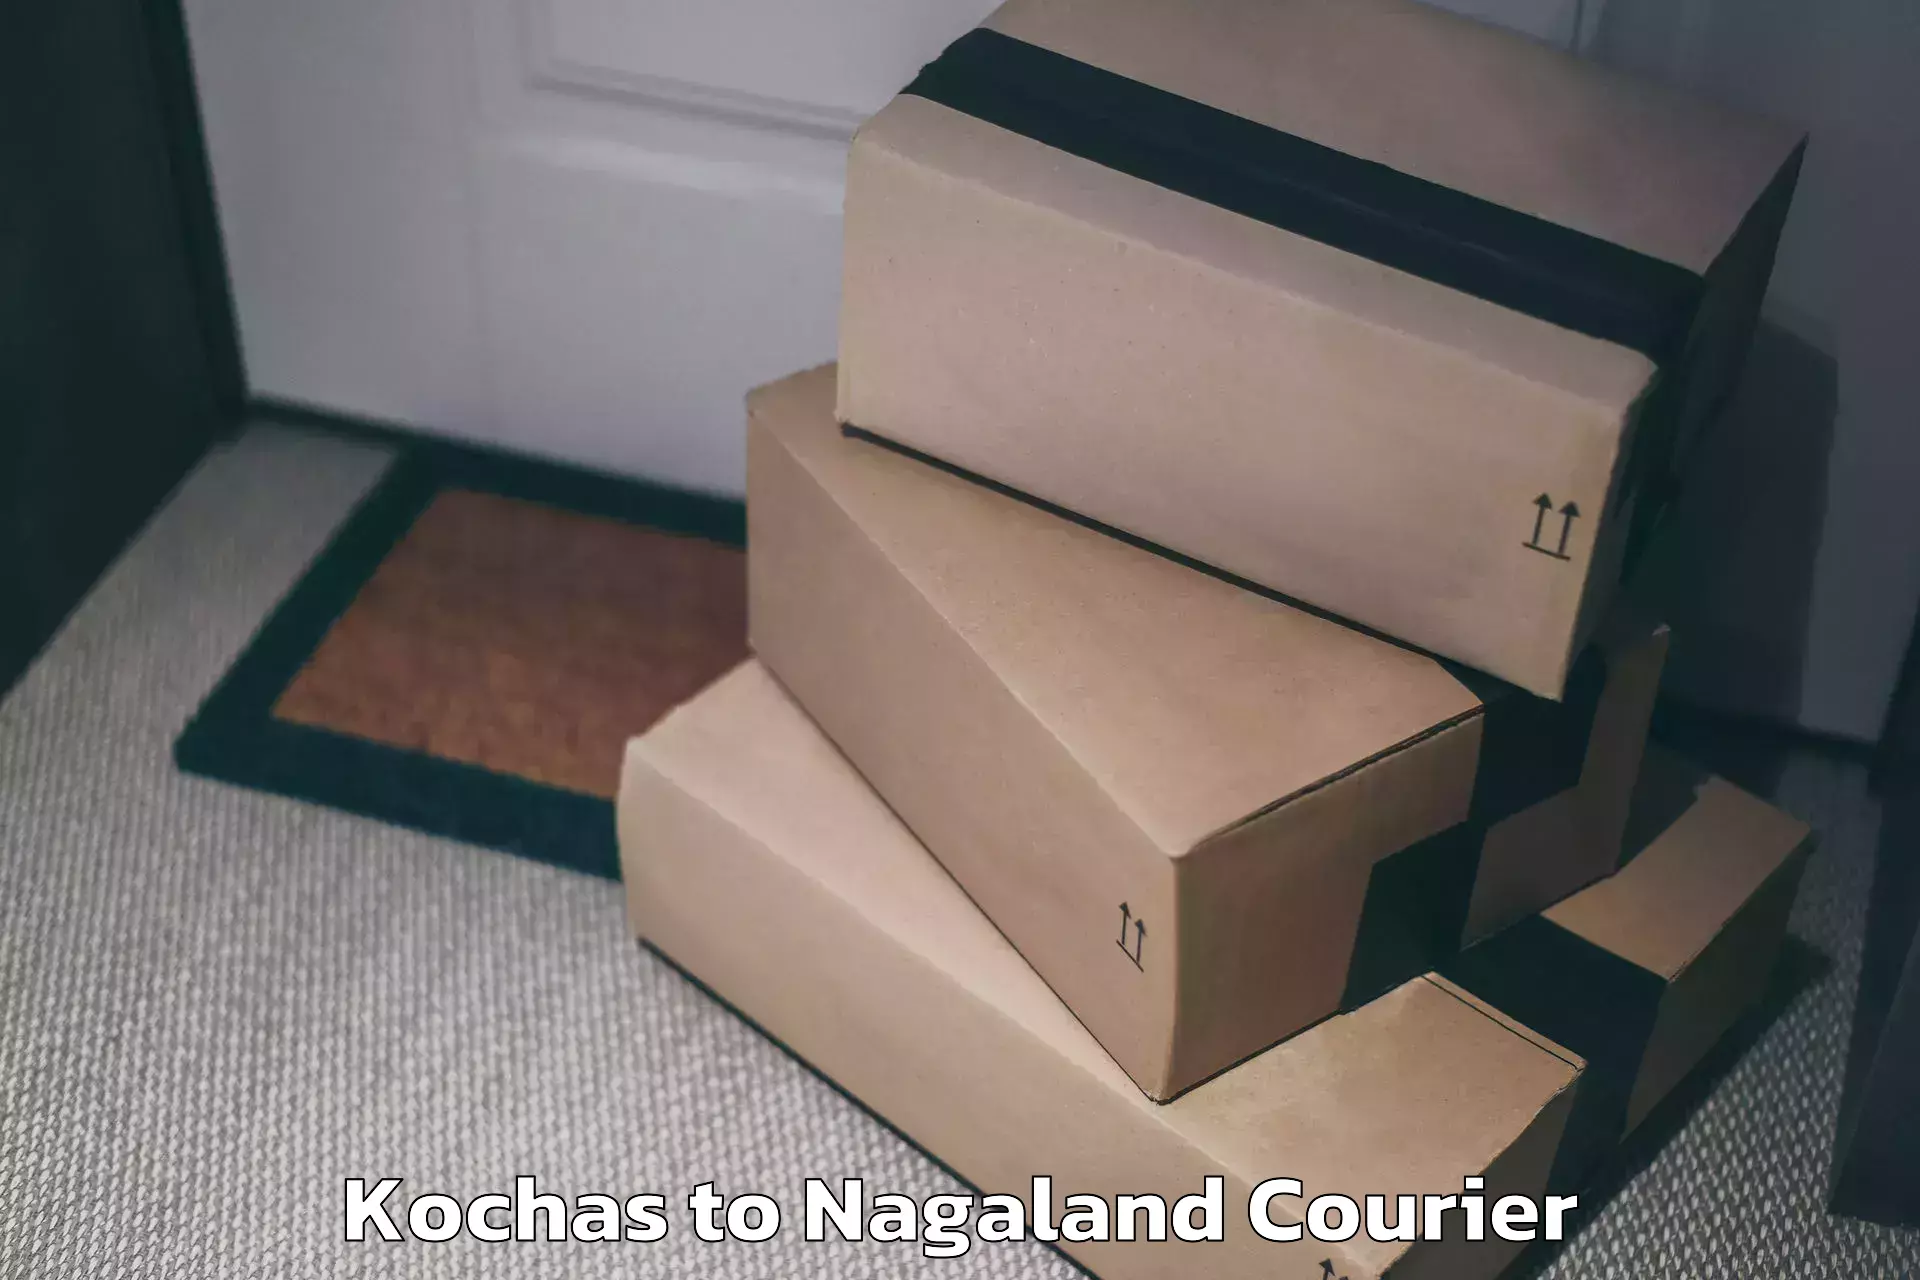 Personal effects shipping Kochas to Wokha